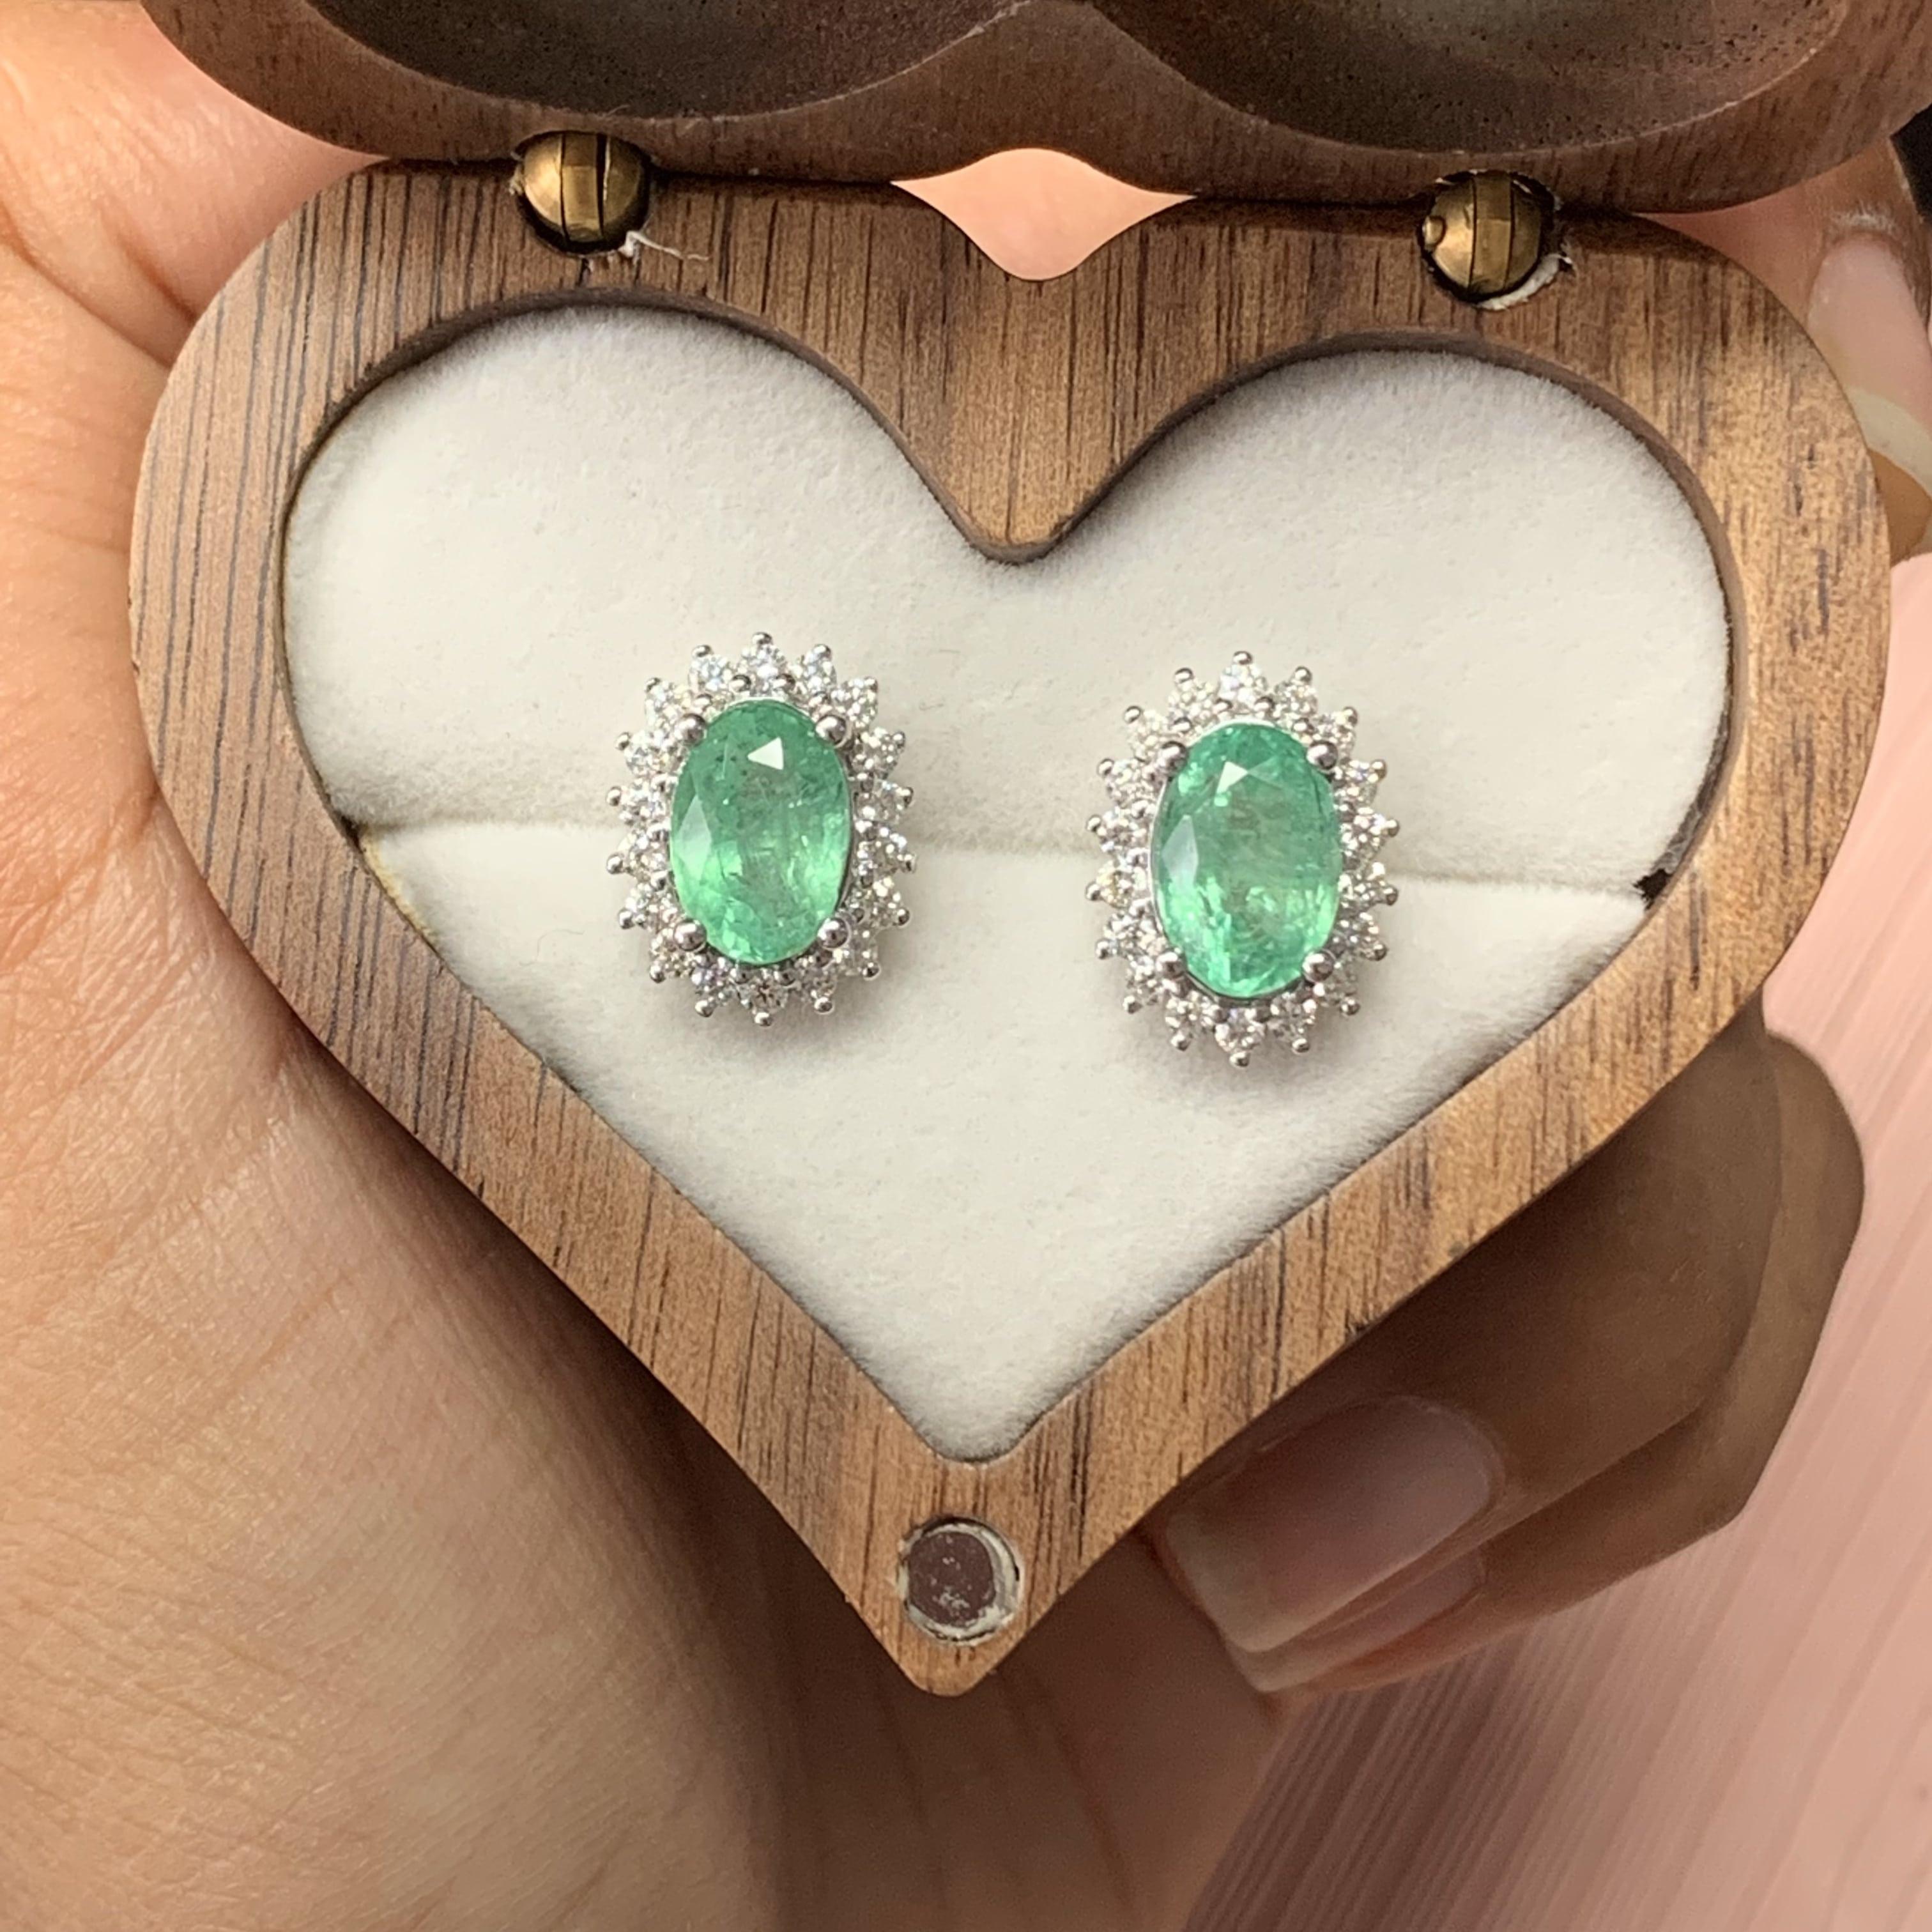 Ein äußerst reizvolles und klassisches Schmuckpaar mit diesen exquisiten und eleganten Smaragd-Ohrringen. Die Smaragde sind oval geschliffen und haben ein Gesamtgewicht von 2.96 Karat. 

Diese Smaragdohrringe sind zertifiziert und werden mit einem